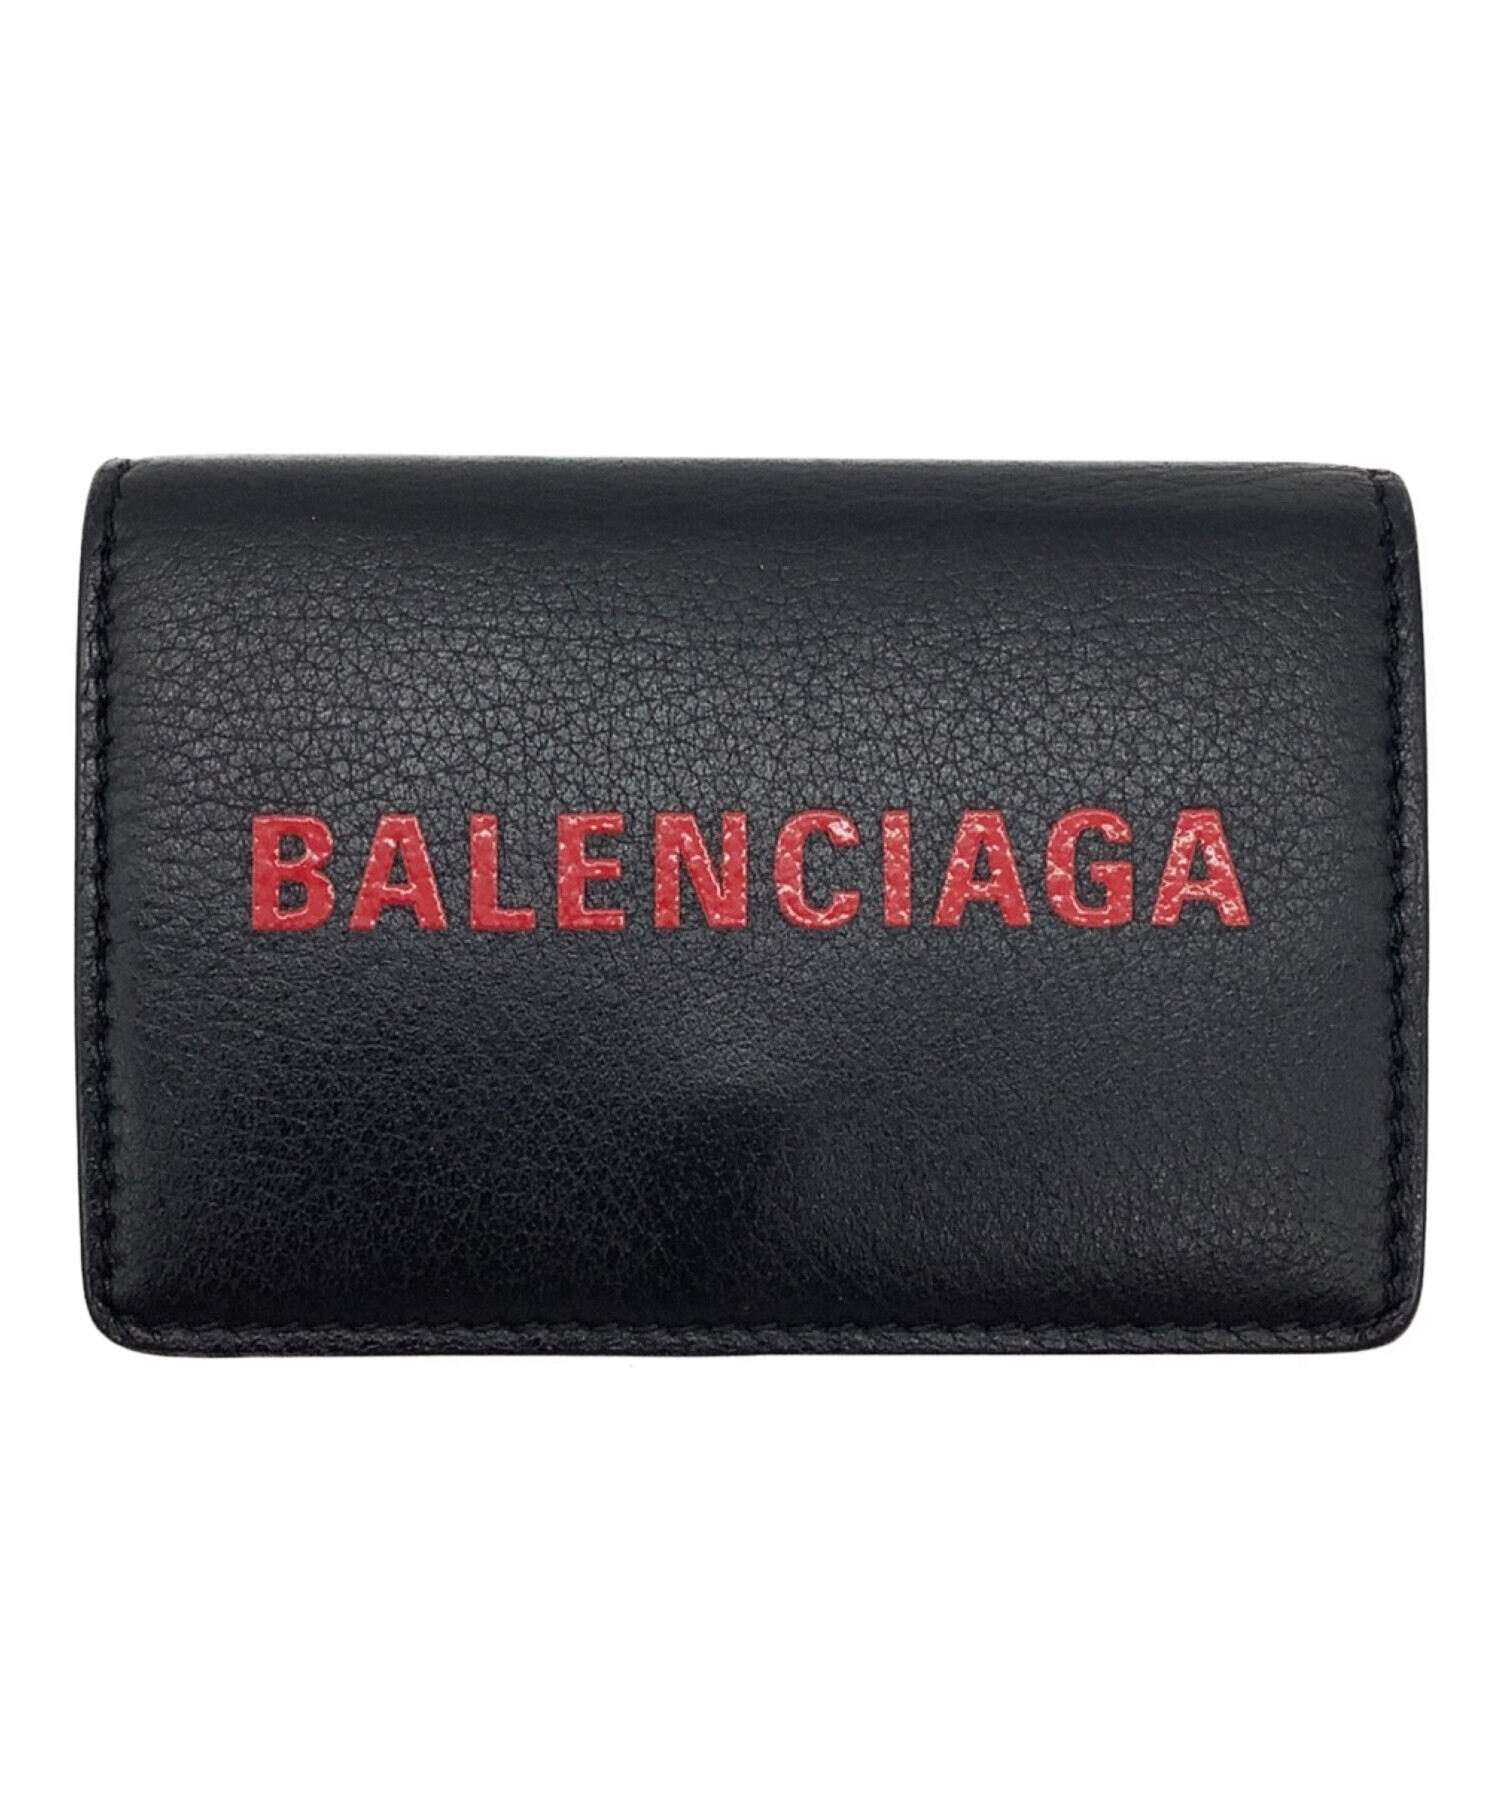 BALENCIAGA (バレンシアガ) 3つ折り財布 ブラック×レッド